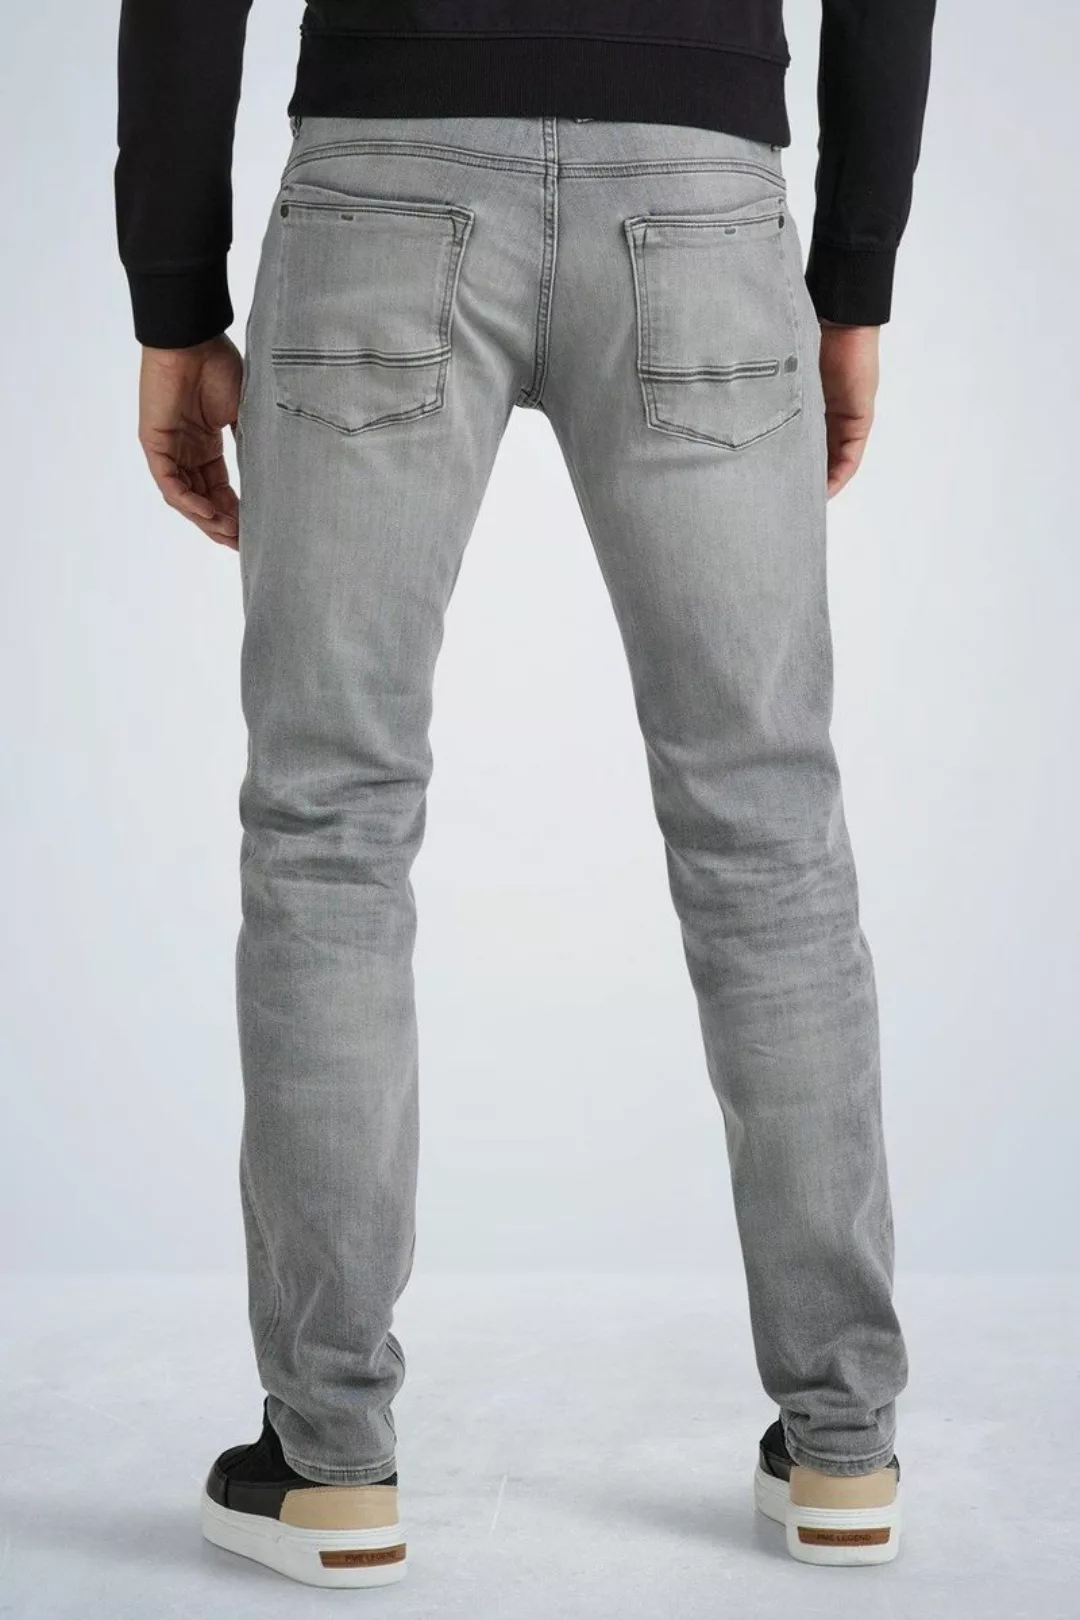 PME Legend Commander 3.0 Jeans Grau - Größe W 29 - L 30 günstig online kaufen